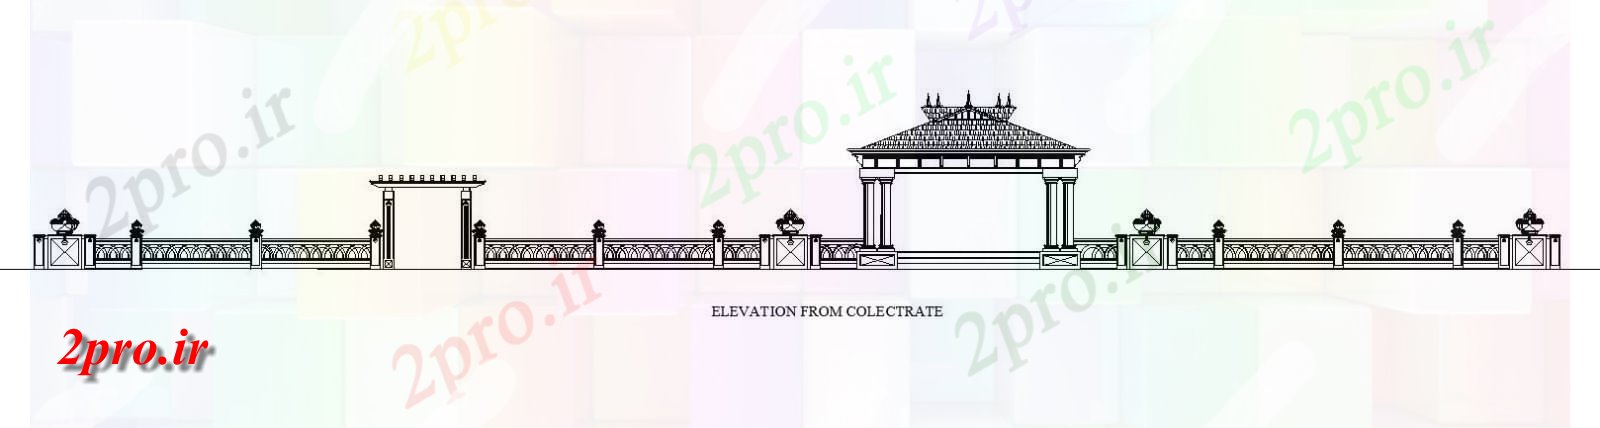 دانلود نقشه کلیسا - معبد - مکان مذهبی نما از طراحی معماری collectorate از معبد Kottarakkulam   (کد164671)